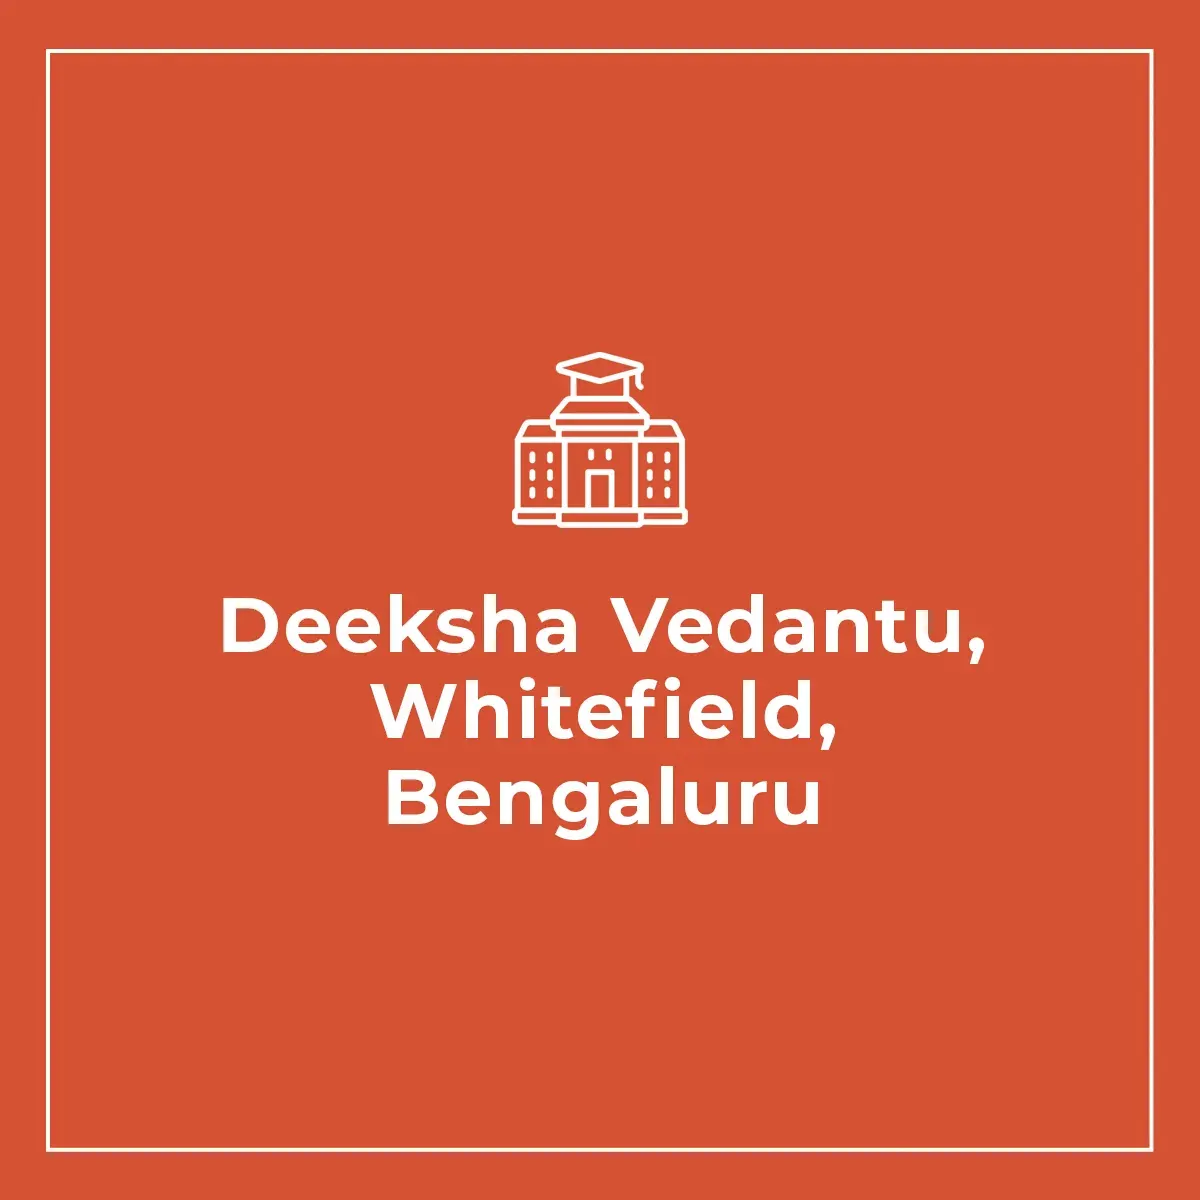 Deeksha Vedantu, Whitefield, Bengaluru